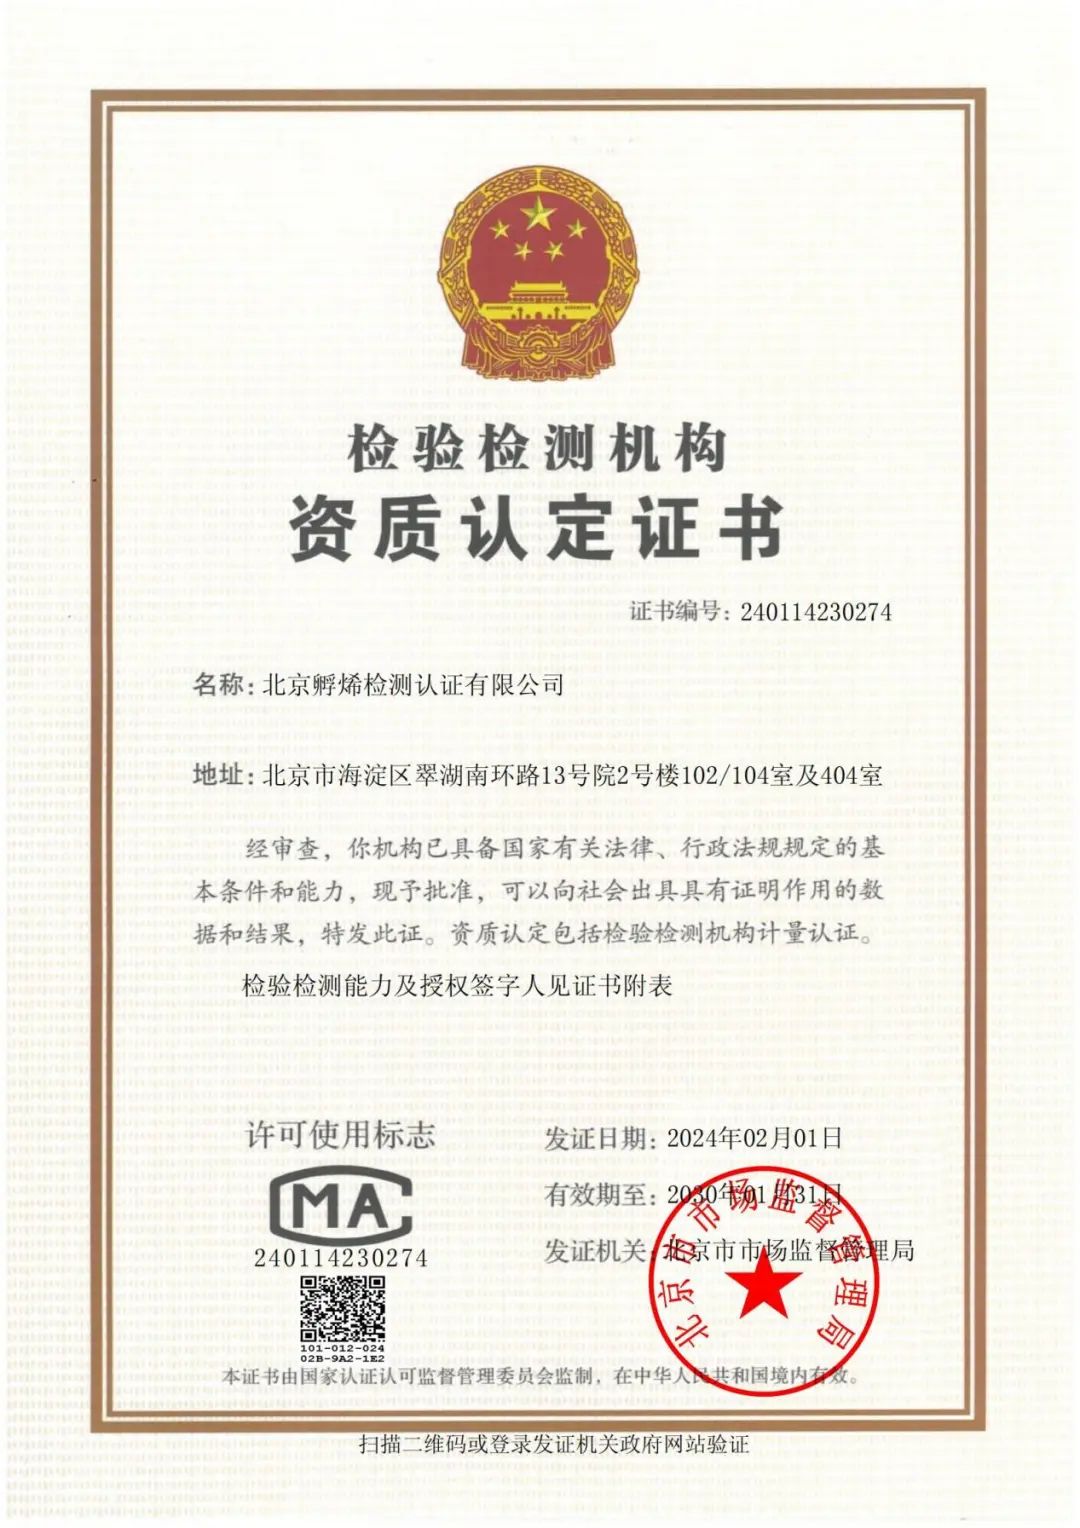 喜报！北京孵烯检测认证有限公司取得CMA资质认定证书